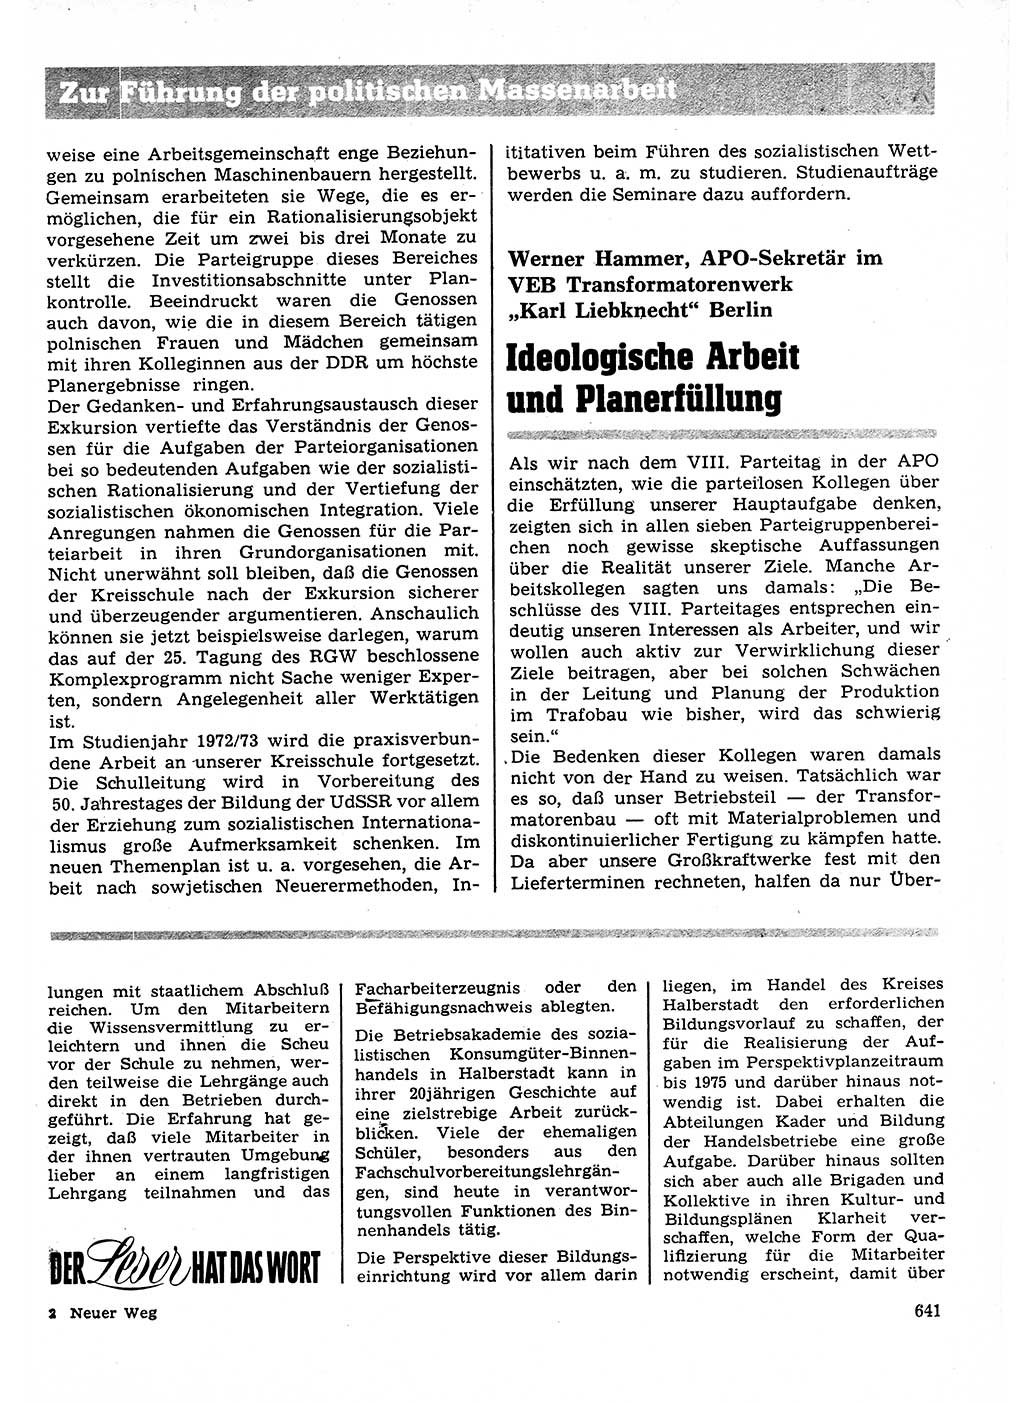 Neuer Weg (NW), Organ des Zentralkomitees (ZK) der SED (Sozialistische Einheitspartei Deutschlands) für Fragen des Parteilebens, 27. Jahrgang [Deutsche Demokratische Republik (DDR)] 1972, Seite 641 (NW ZK SED DDR 1972, S. 641)